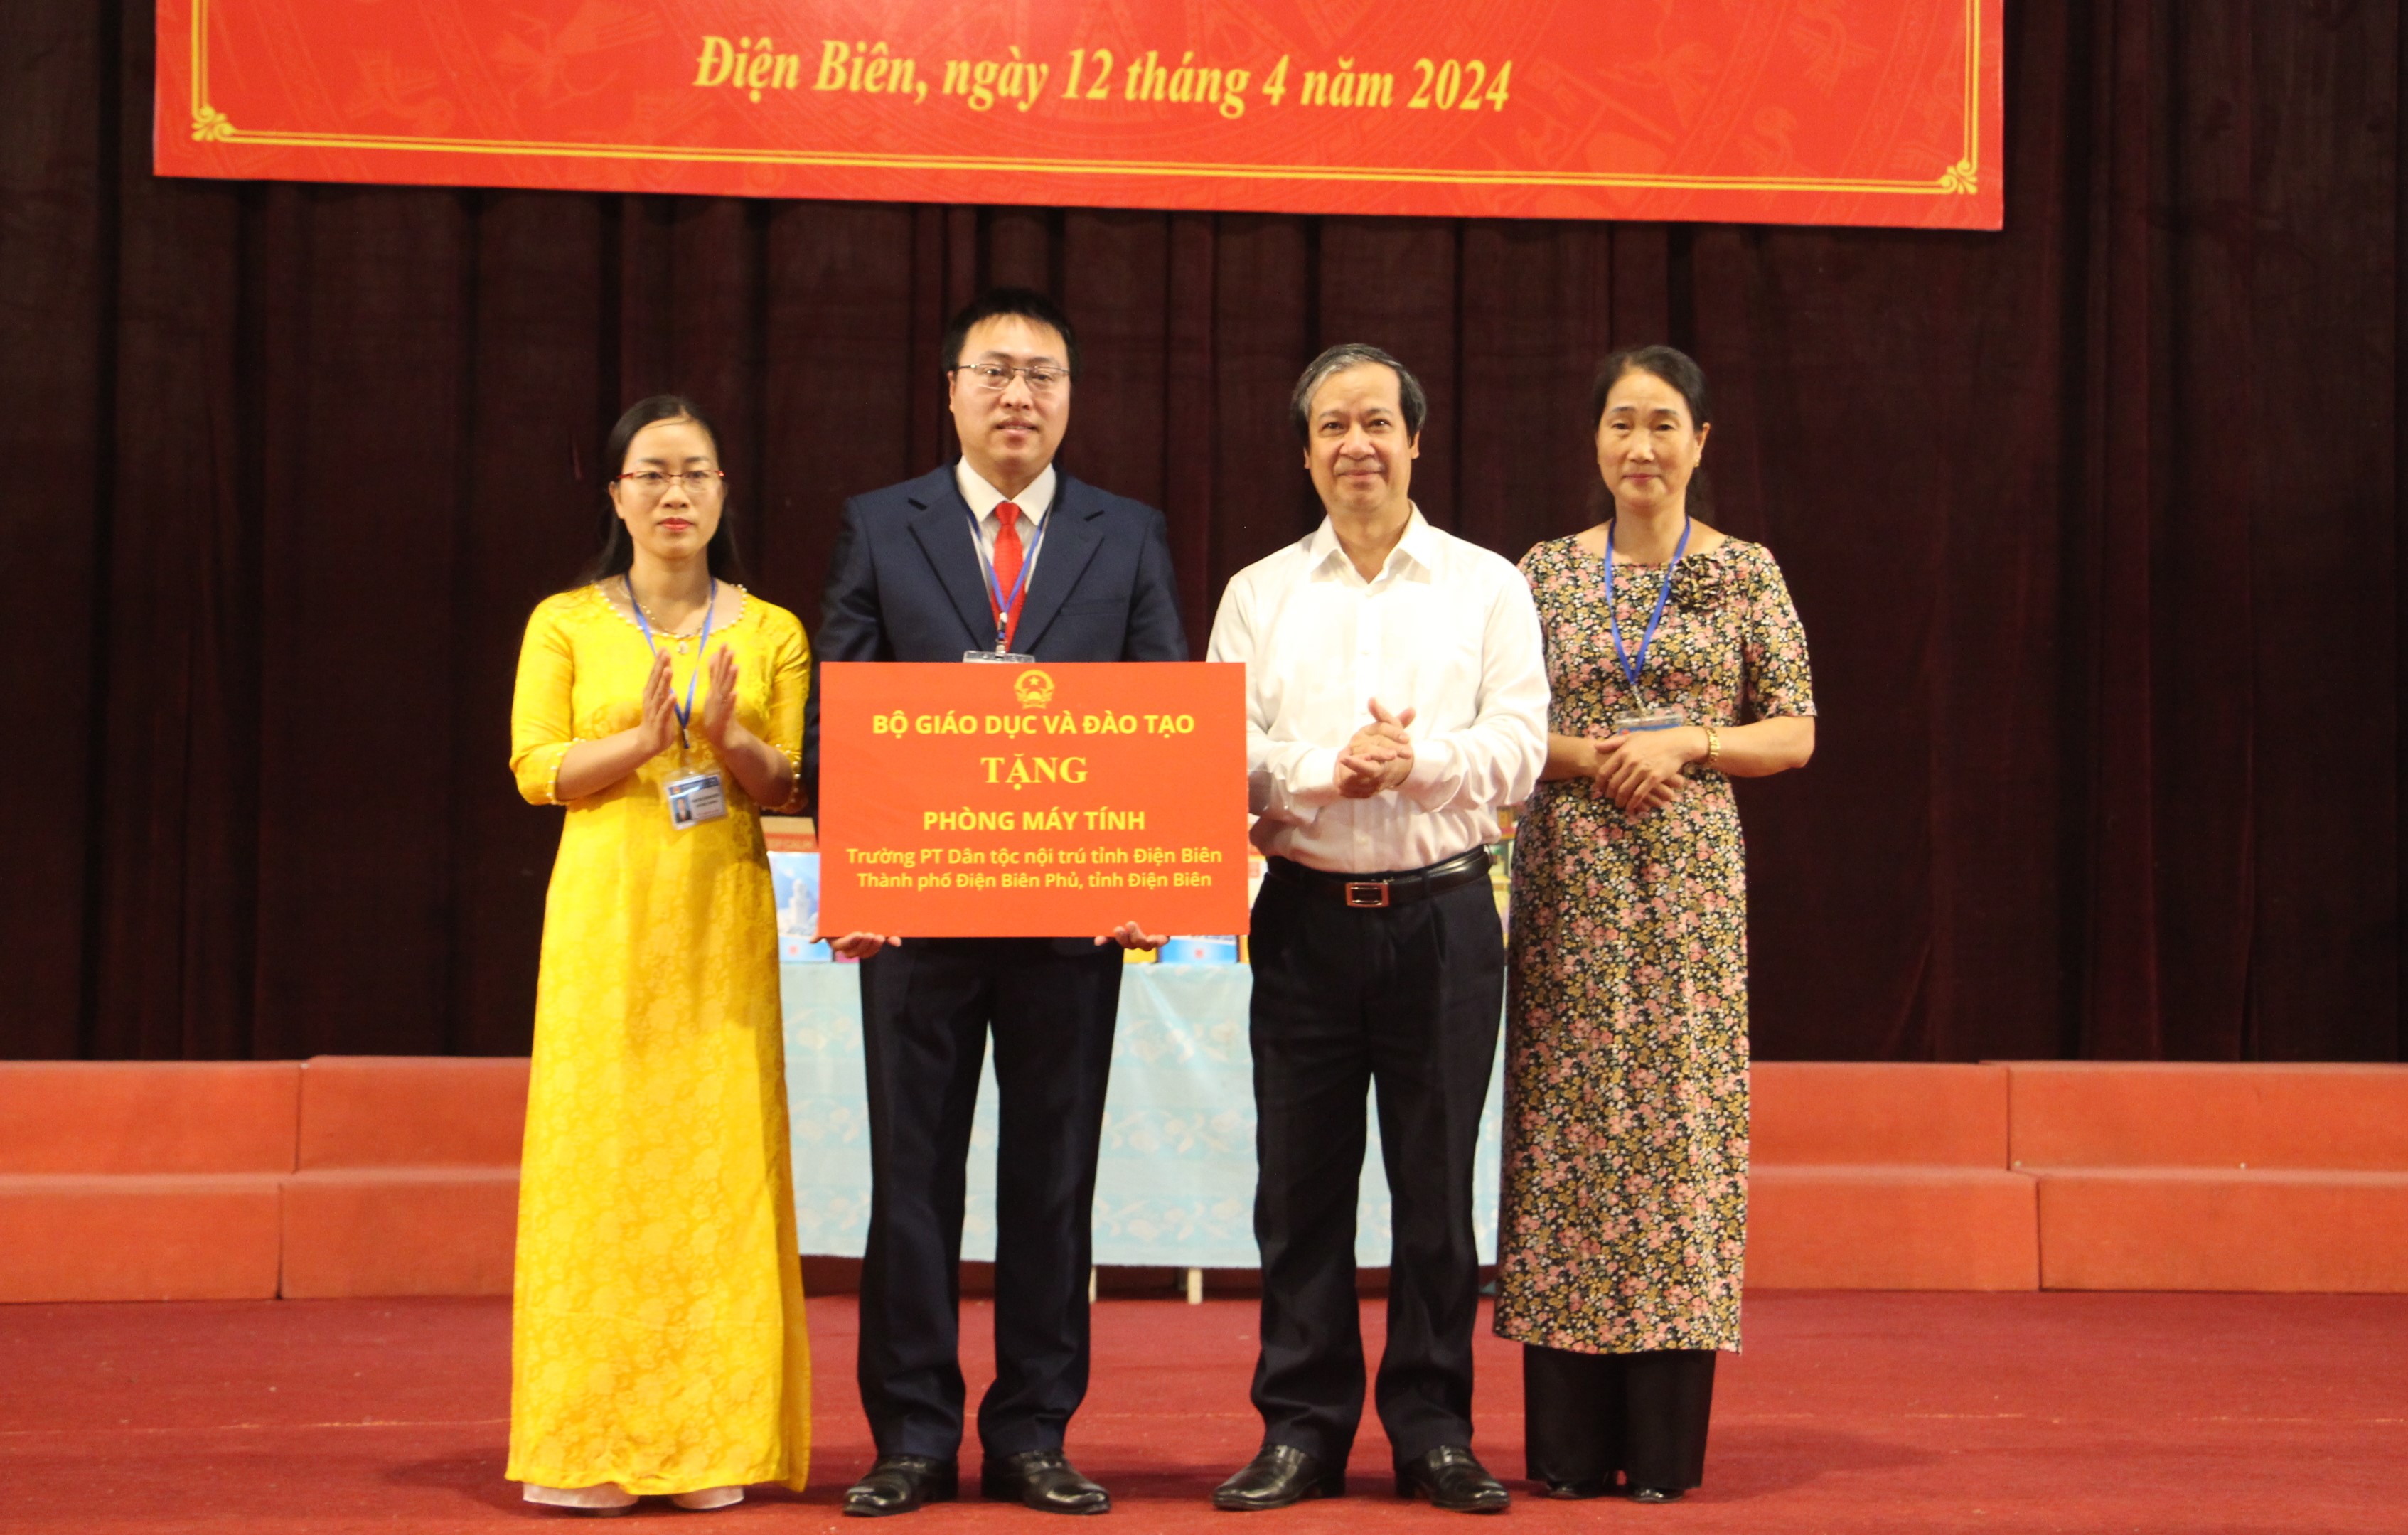 Bộ trưởng Nguyễn Kim Sơn trao tặng phòng máy tính cho Trường phổ thông DTNT tỉnh Điện Biên.